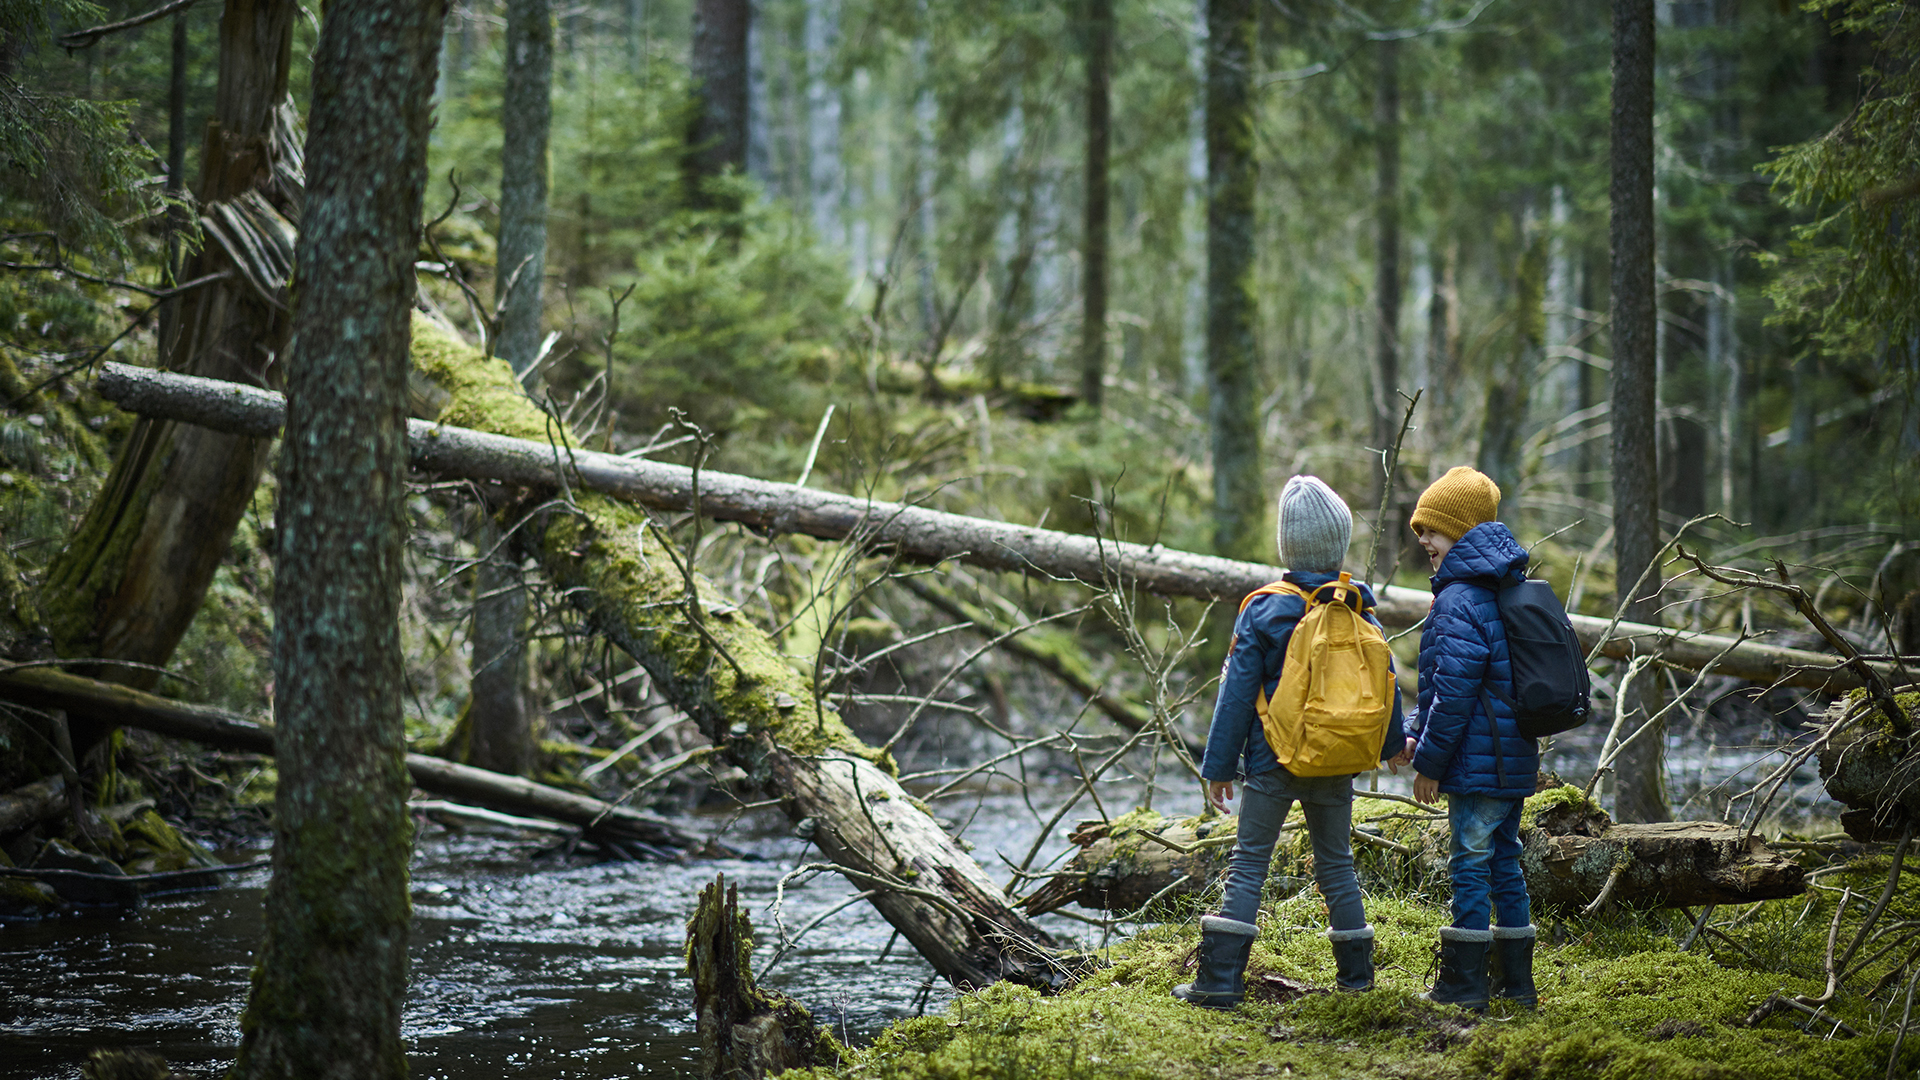 Pojkar på äventyr i skog med fallna träd och bäck. Risvedens naturreservat, Västergötland.